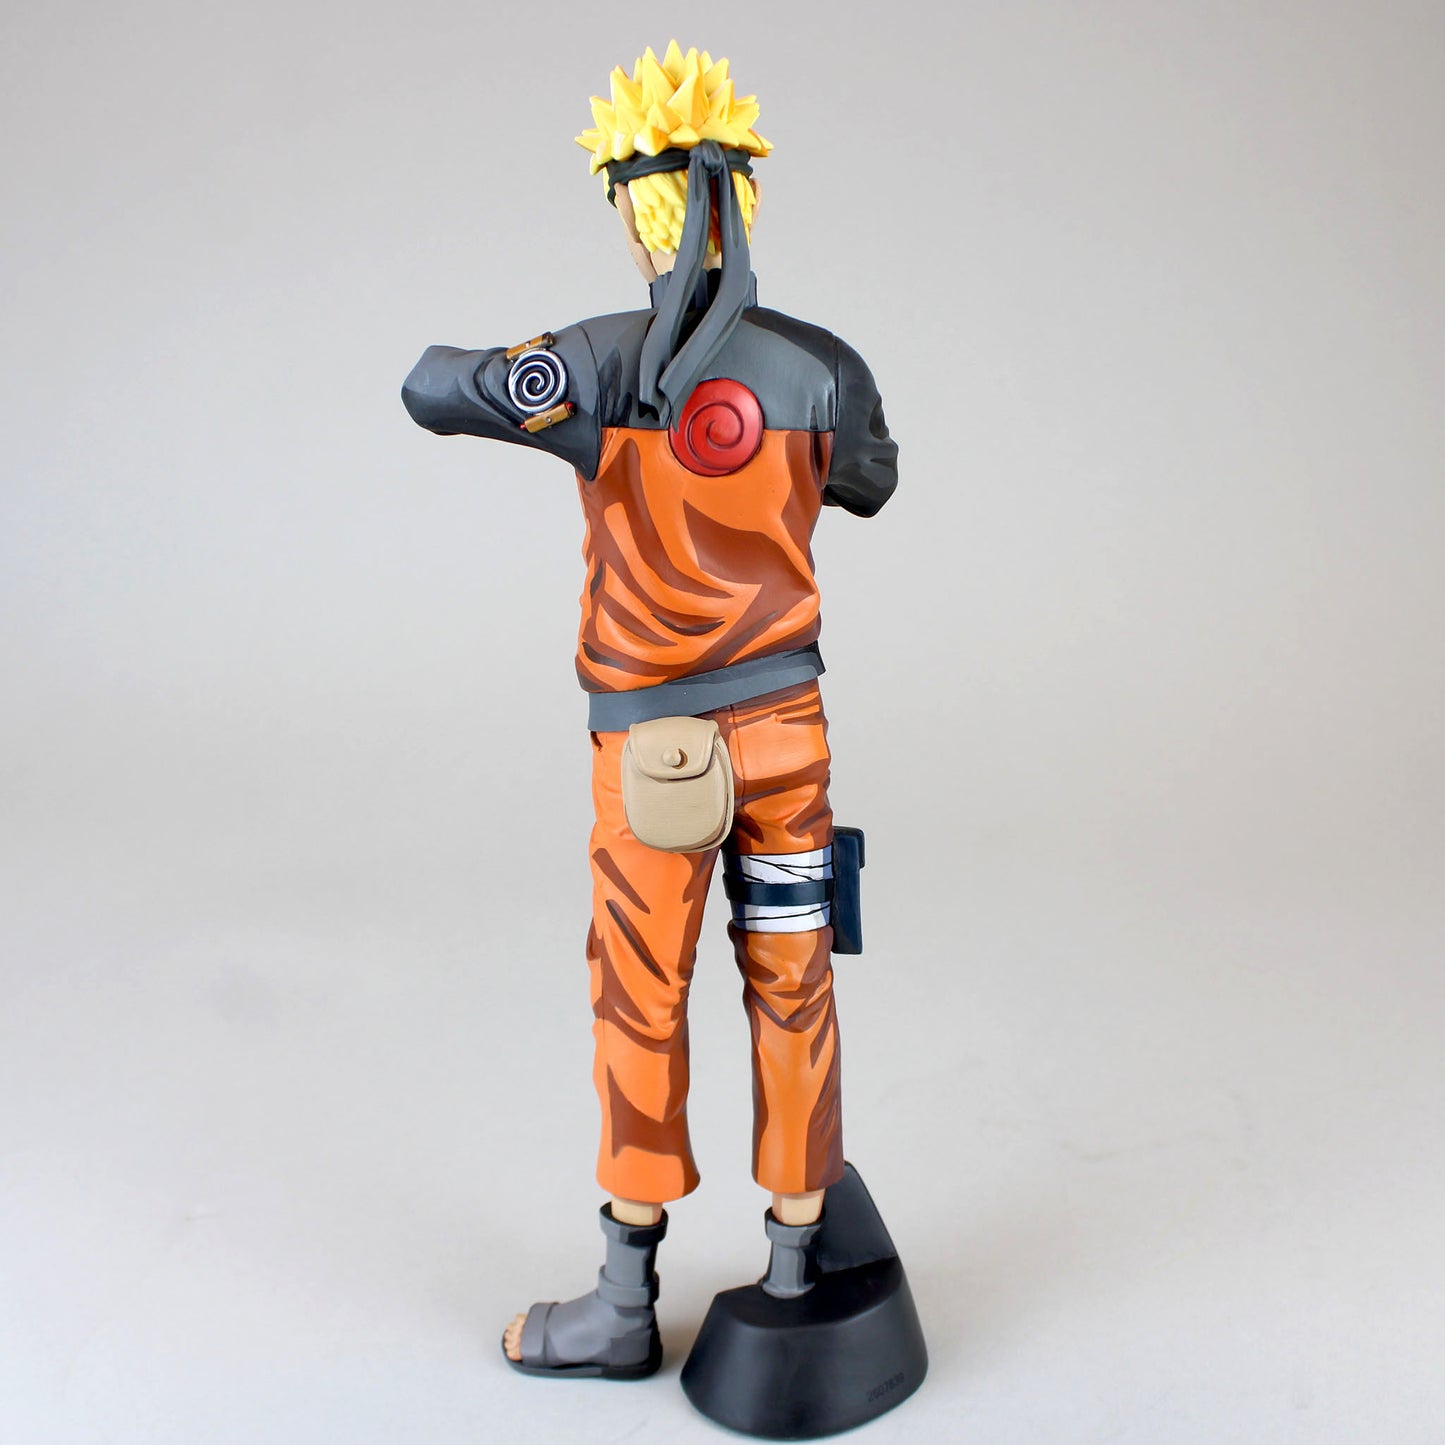 Grandista Uchiha Sasuke #2 (Manga Dimensions) Naruto Statue